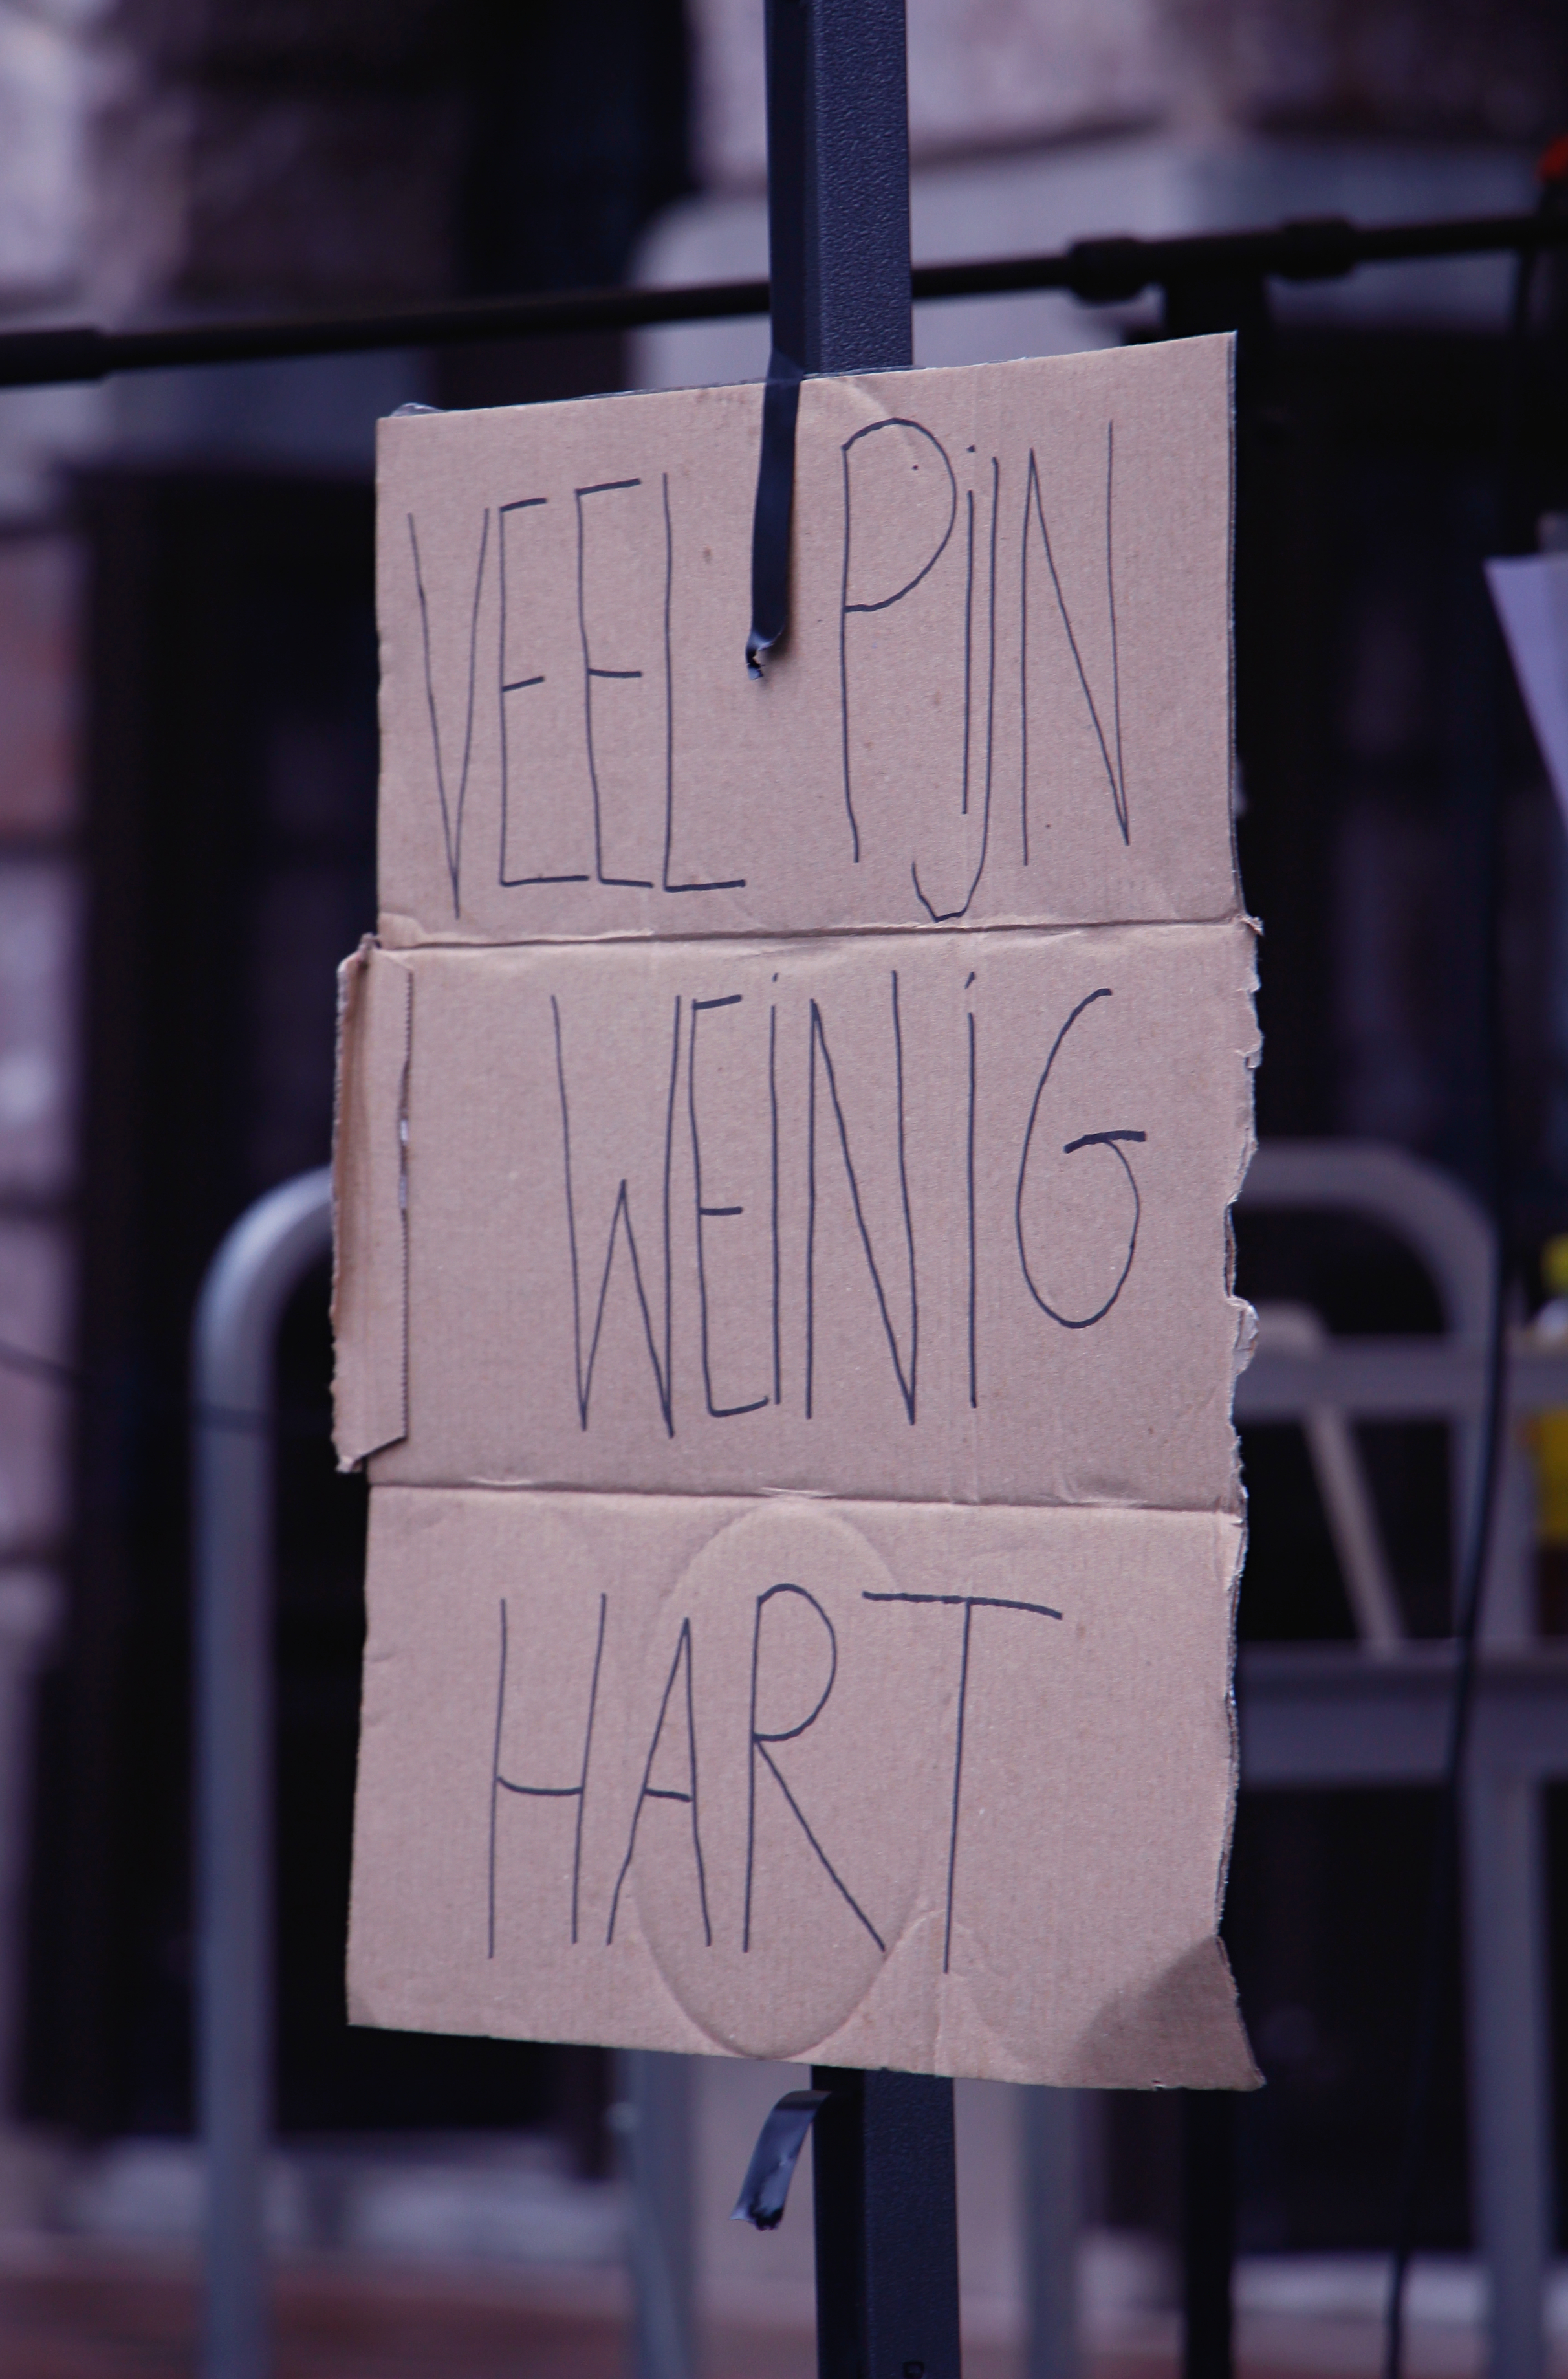 Kartonnen bord met de slogan "Veel pijn, weinig hart"